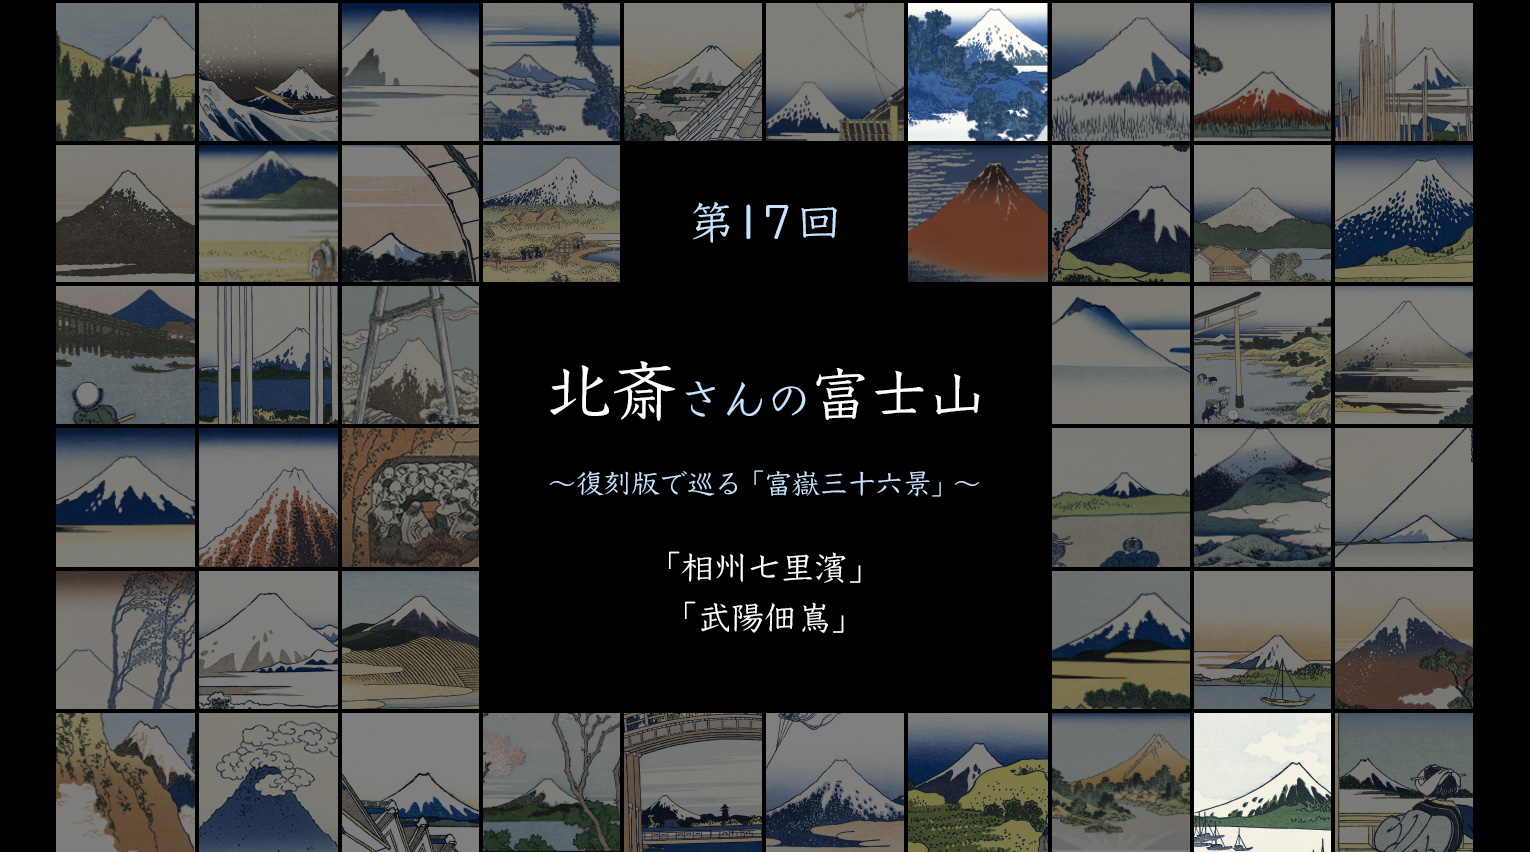 北斎さんの富士山 〜復刻版で見る「富嶽三十六景」〜 (17)【PR】